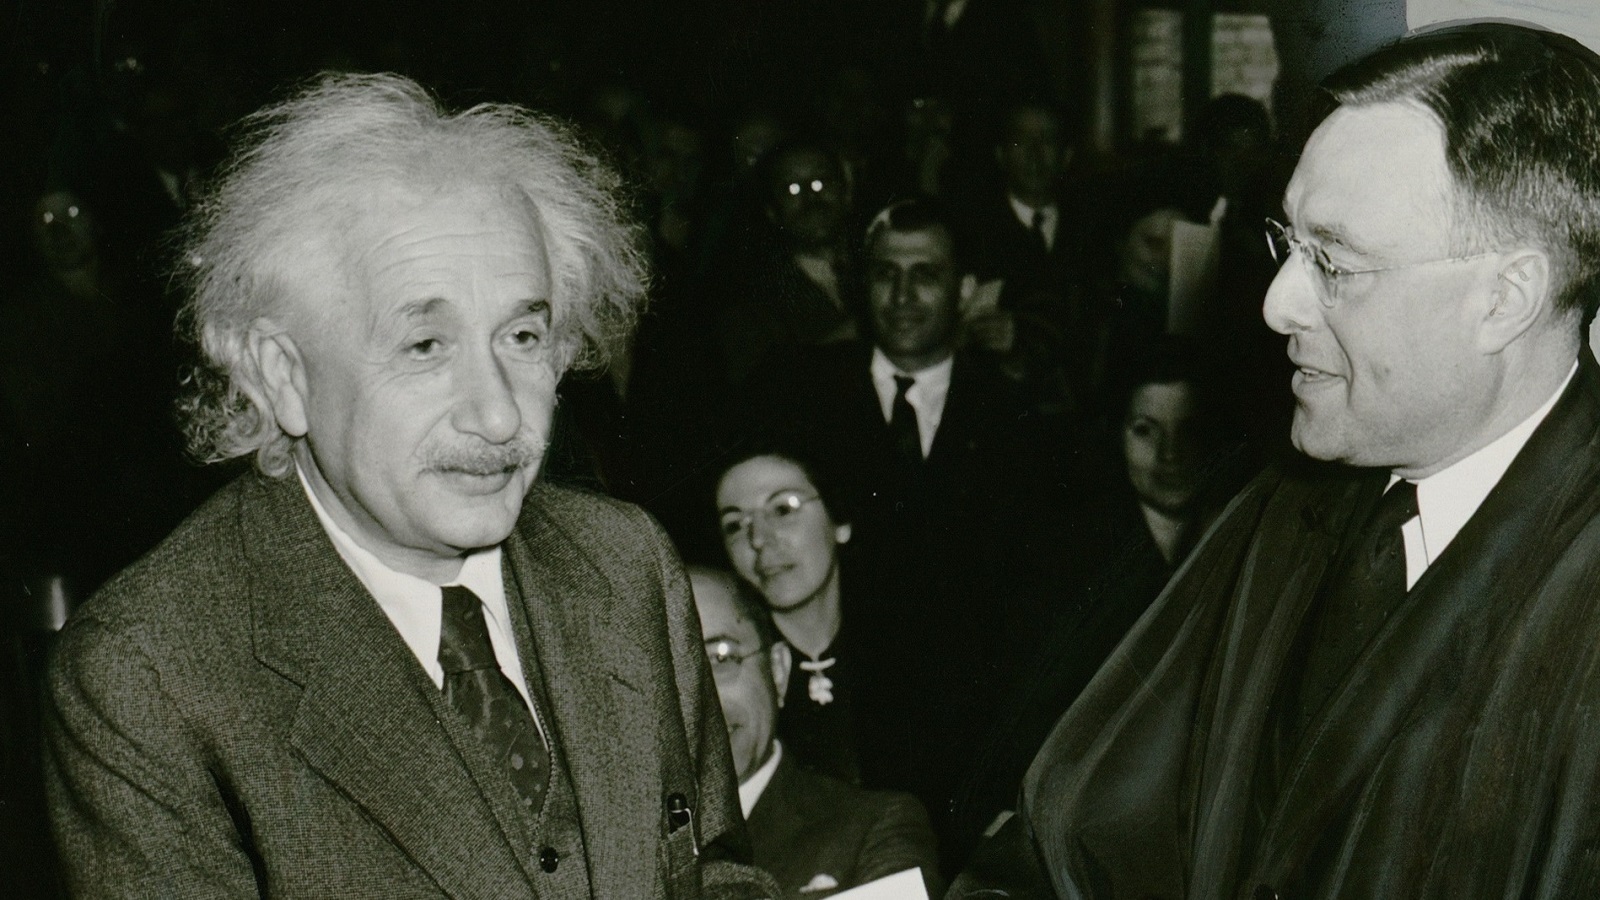 كان شرودنجر أحد مؤيدي فكرة أينشتاين التي تقول إن ميكانيكا الكم هي نظرية غير مكتملة بعد